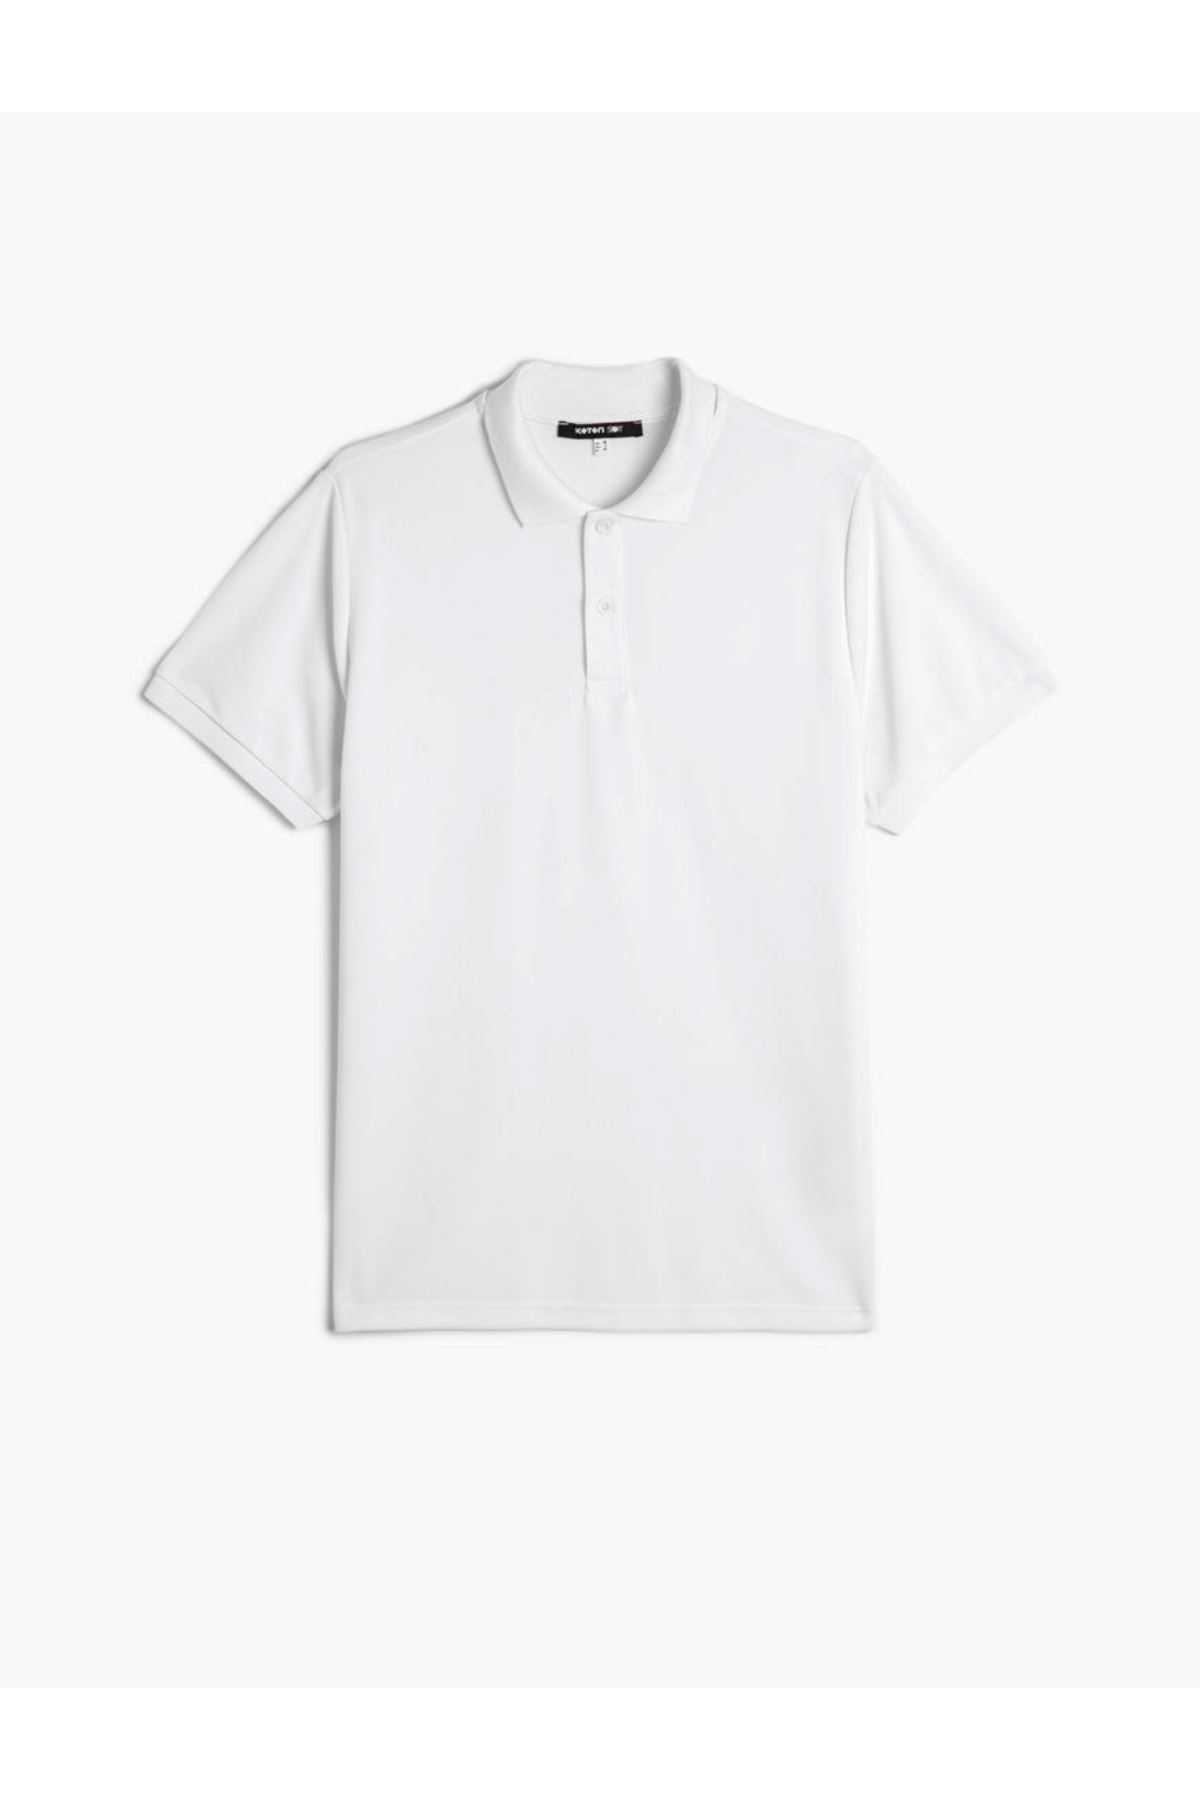 Koton Erkek Beyaz Tişört - 4SAM10059NK